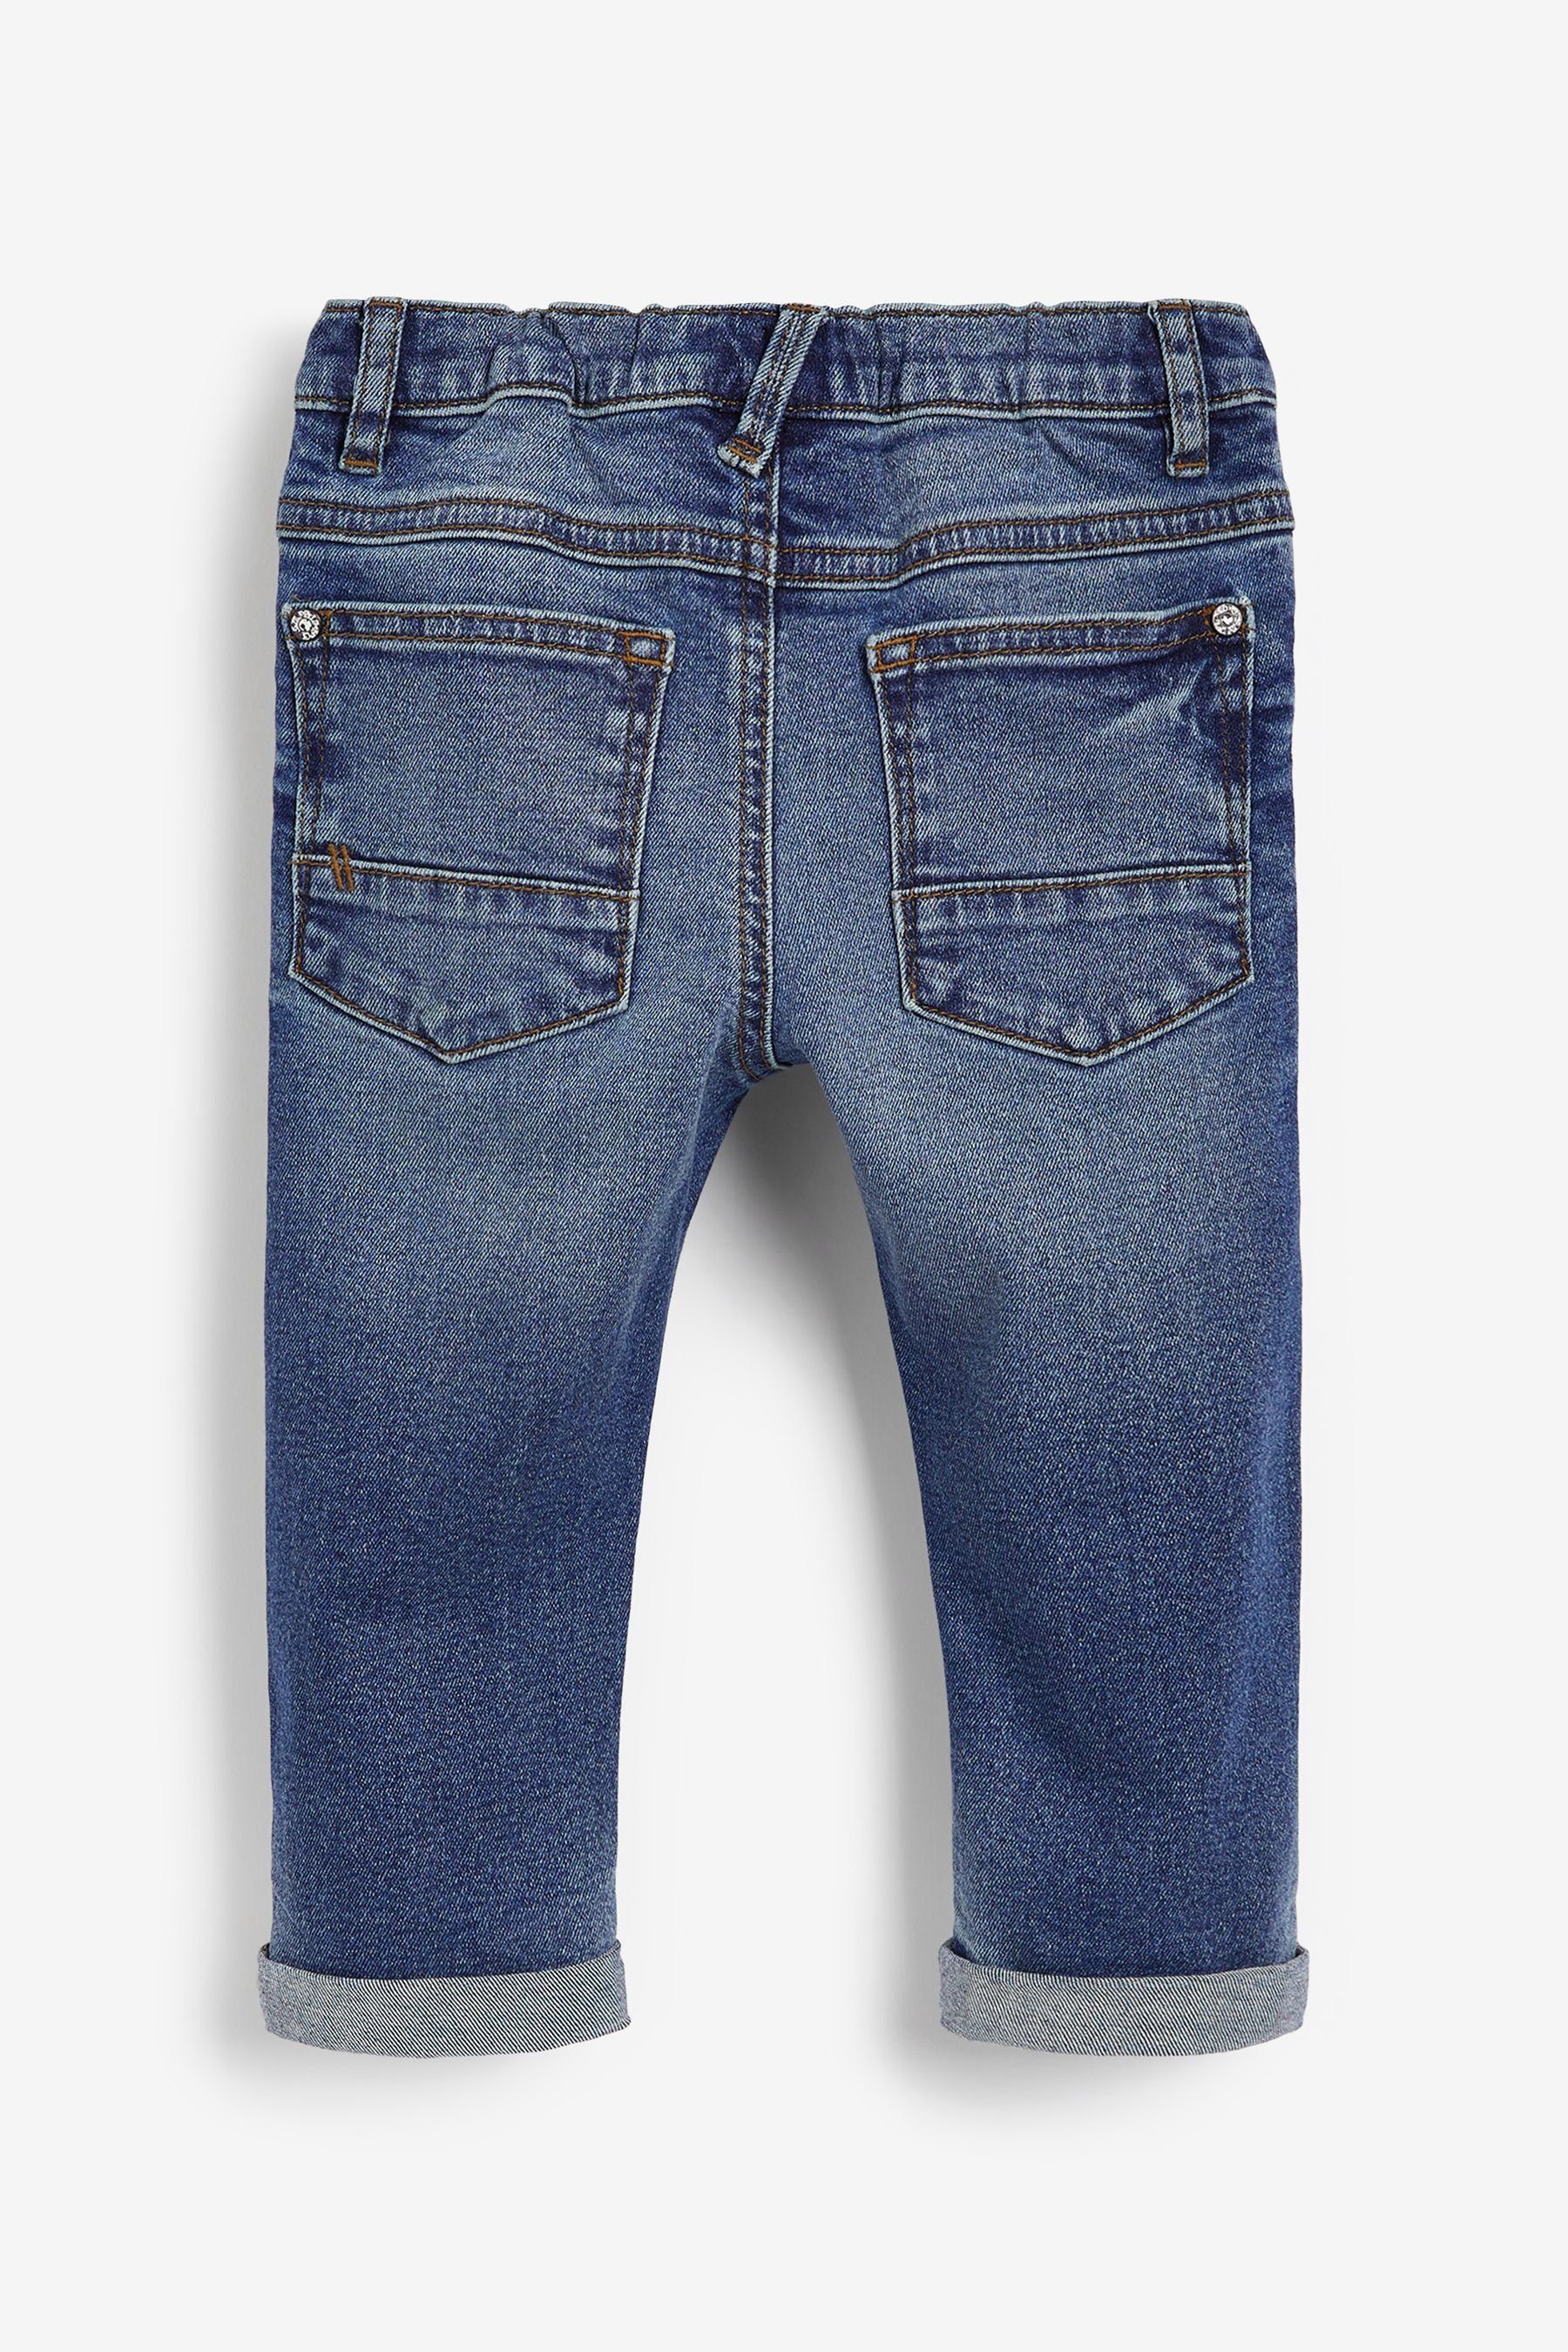 Kinder Jungen (Gr. 50 - 92) Next Destroyed-Jeans Jeans in Used-Optik